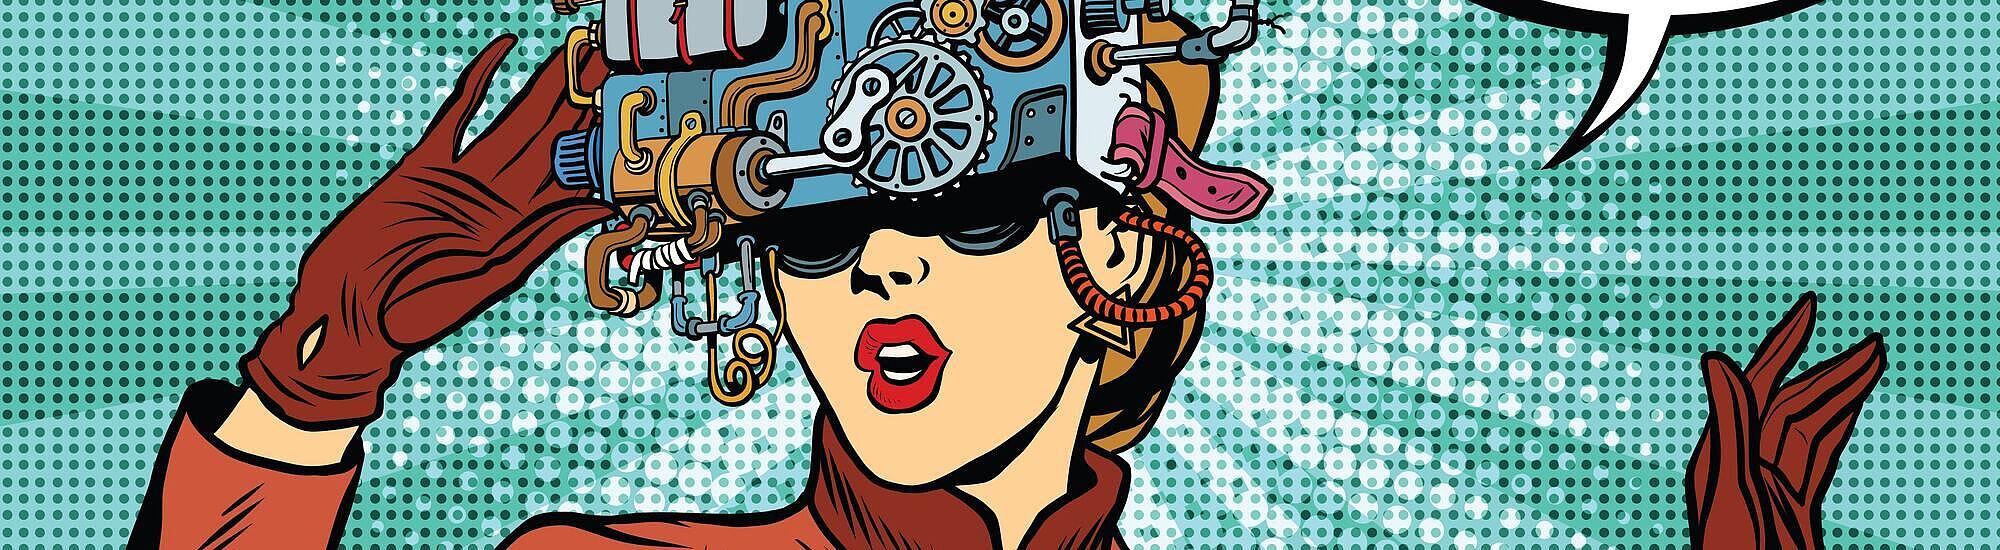 Frau mit Cyberbrille im Cartoon Style